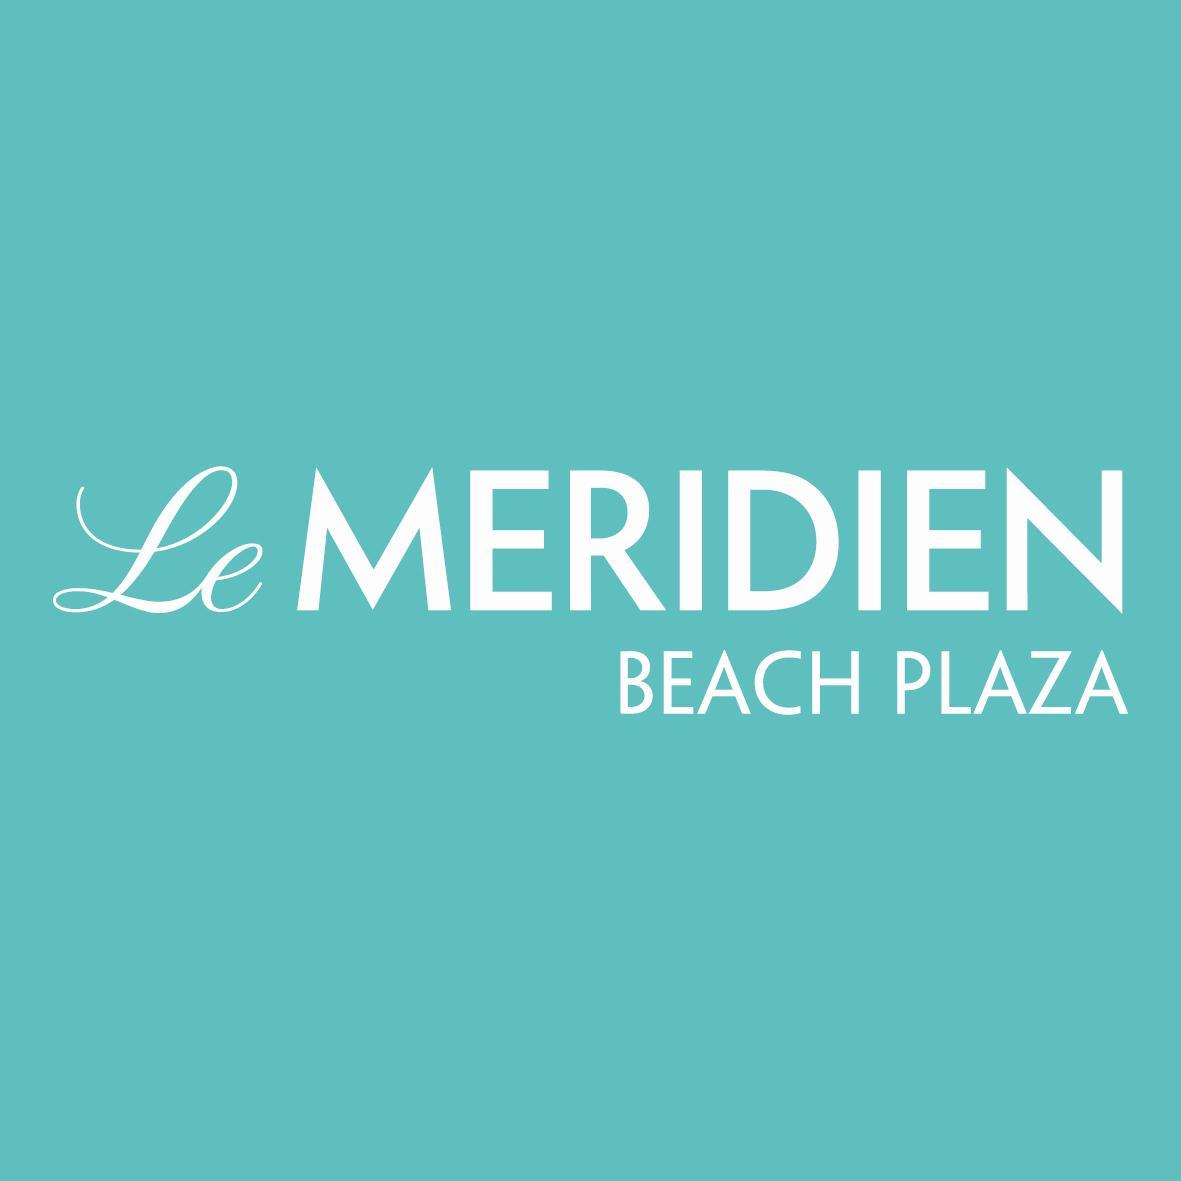 Le Méridien Beach Plaza Recrutement et les candidats ne sont plus qu'à un tweet ...